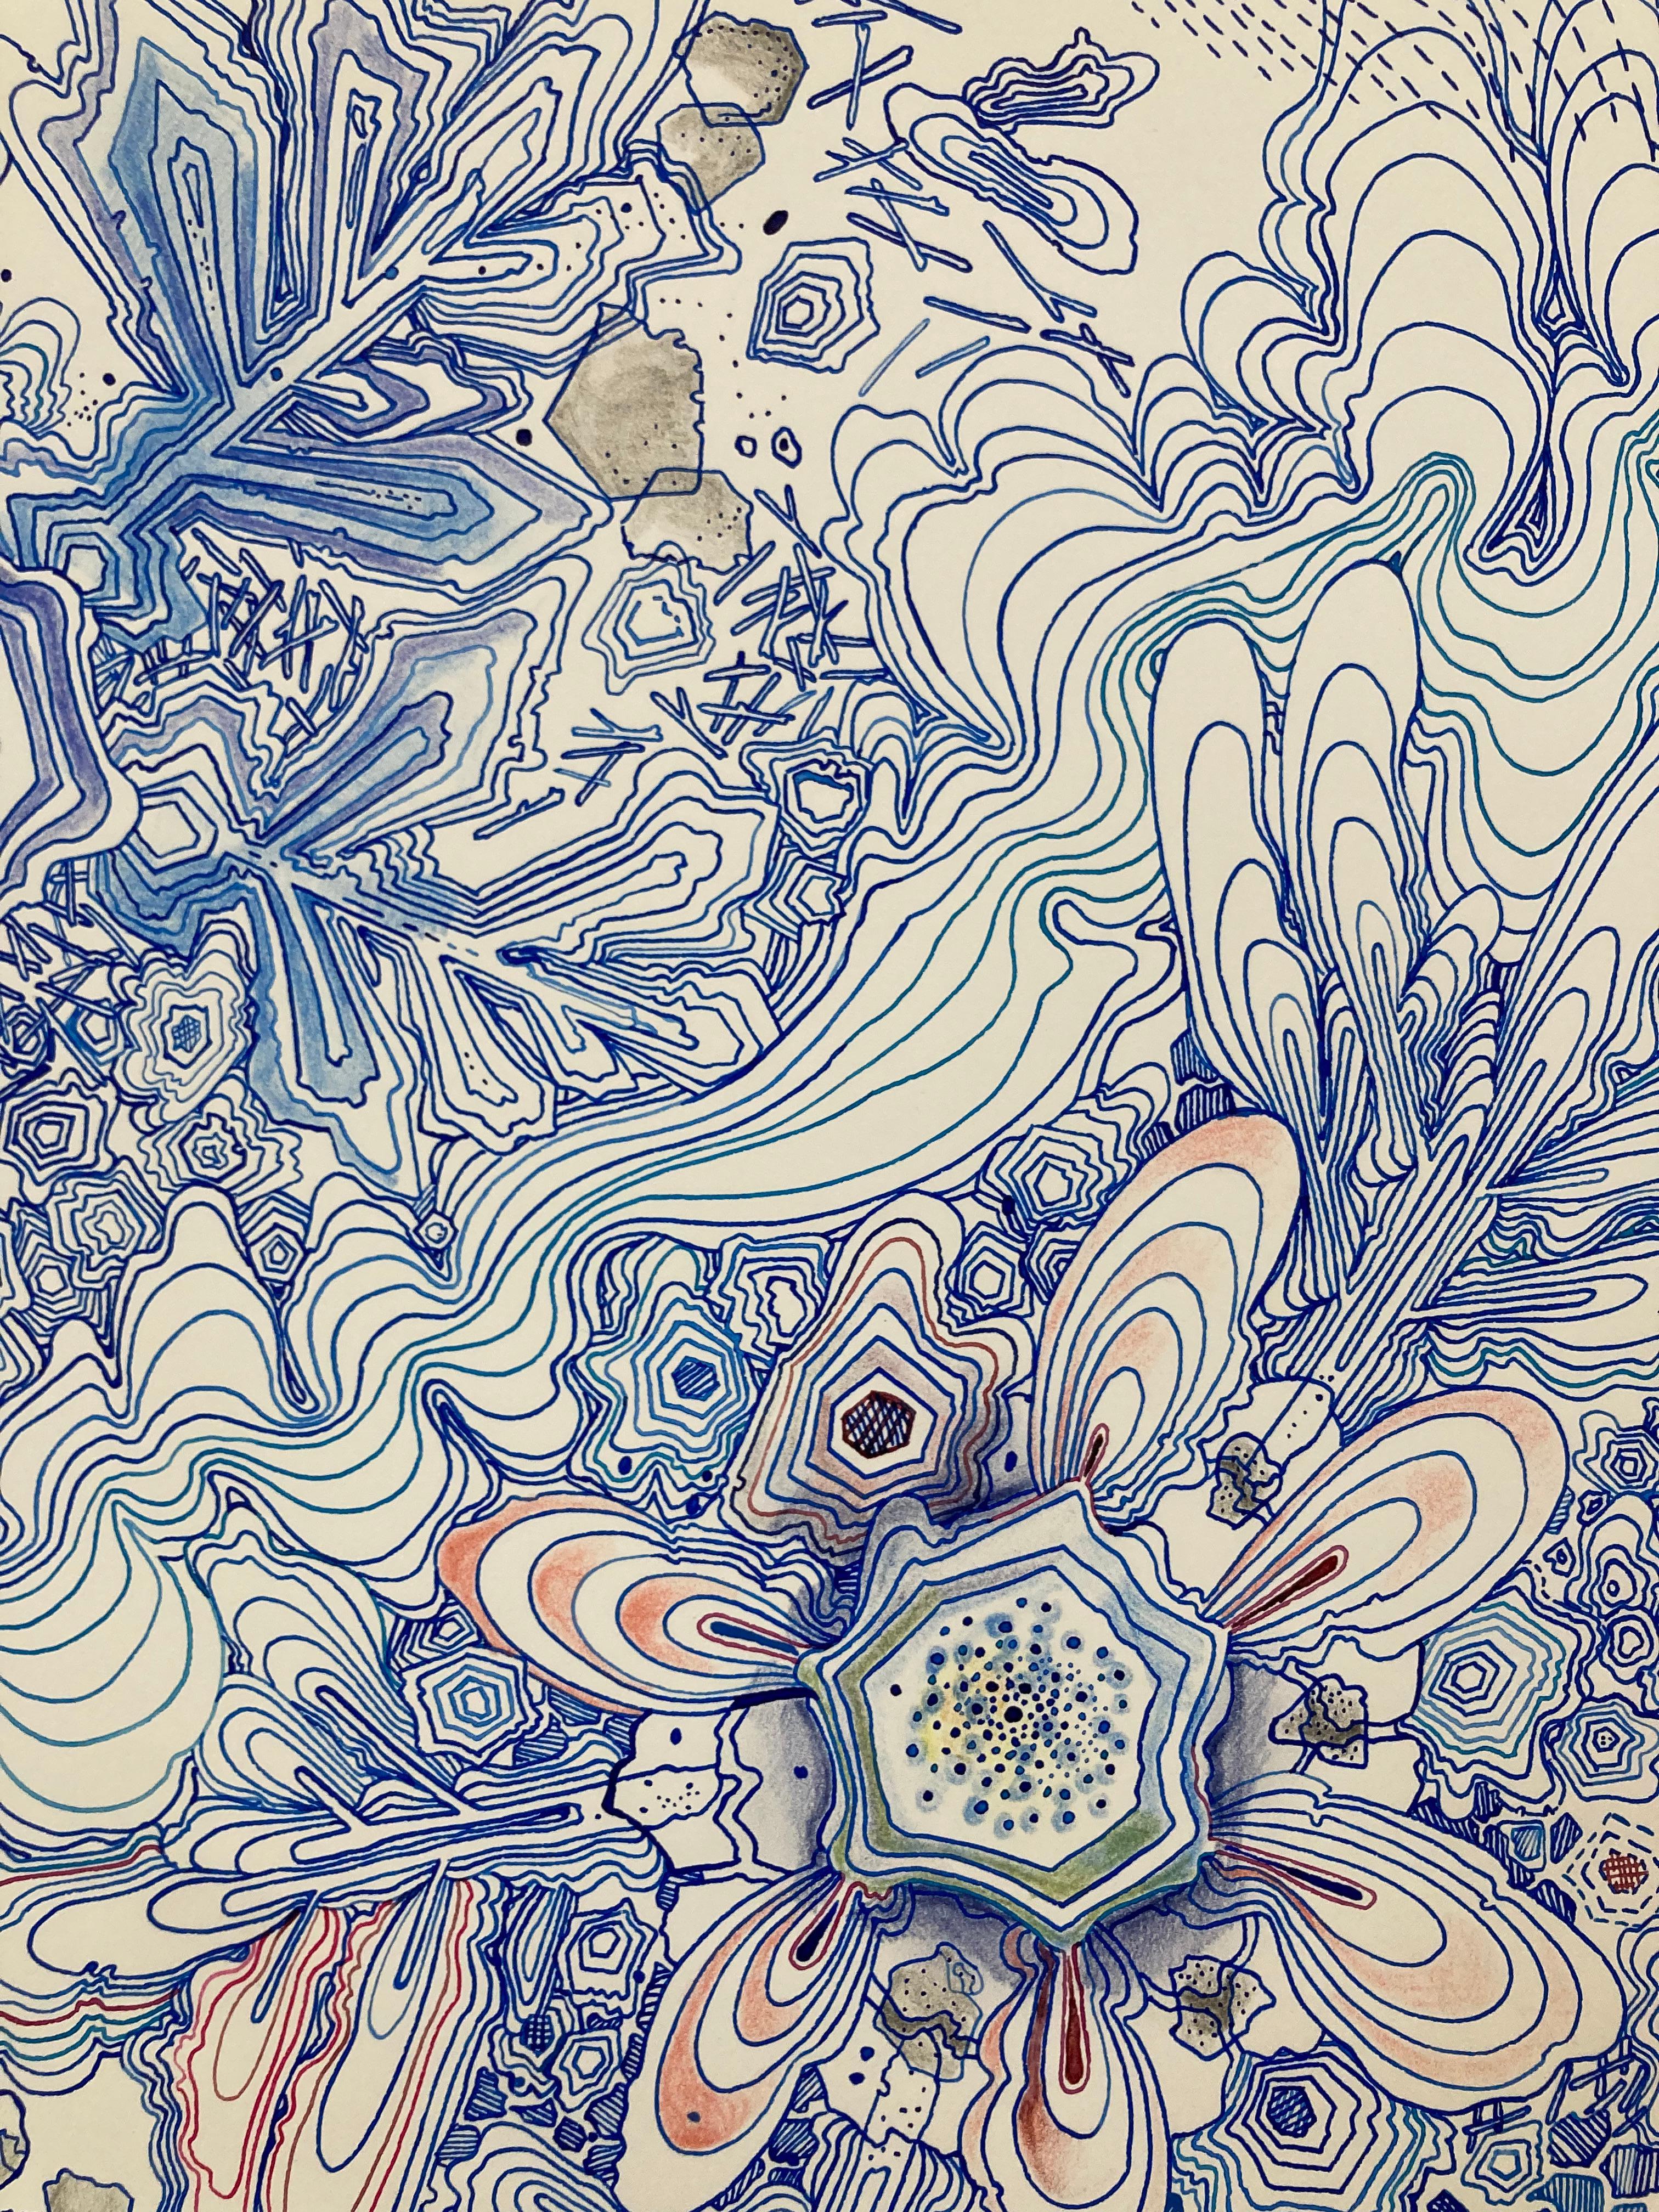 River, Indigo Blue, Navy, Cobalt, Salmon Pink, Red Snowflake Pattern Drawing - Orange Abstract Drawing by Sarah Morejohn